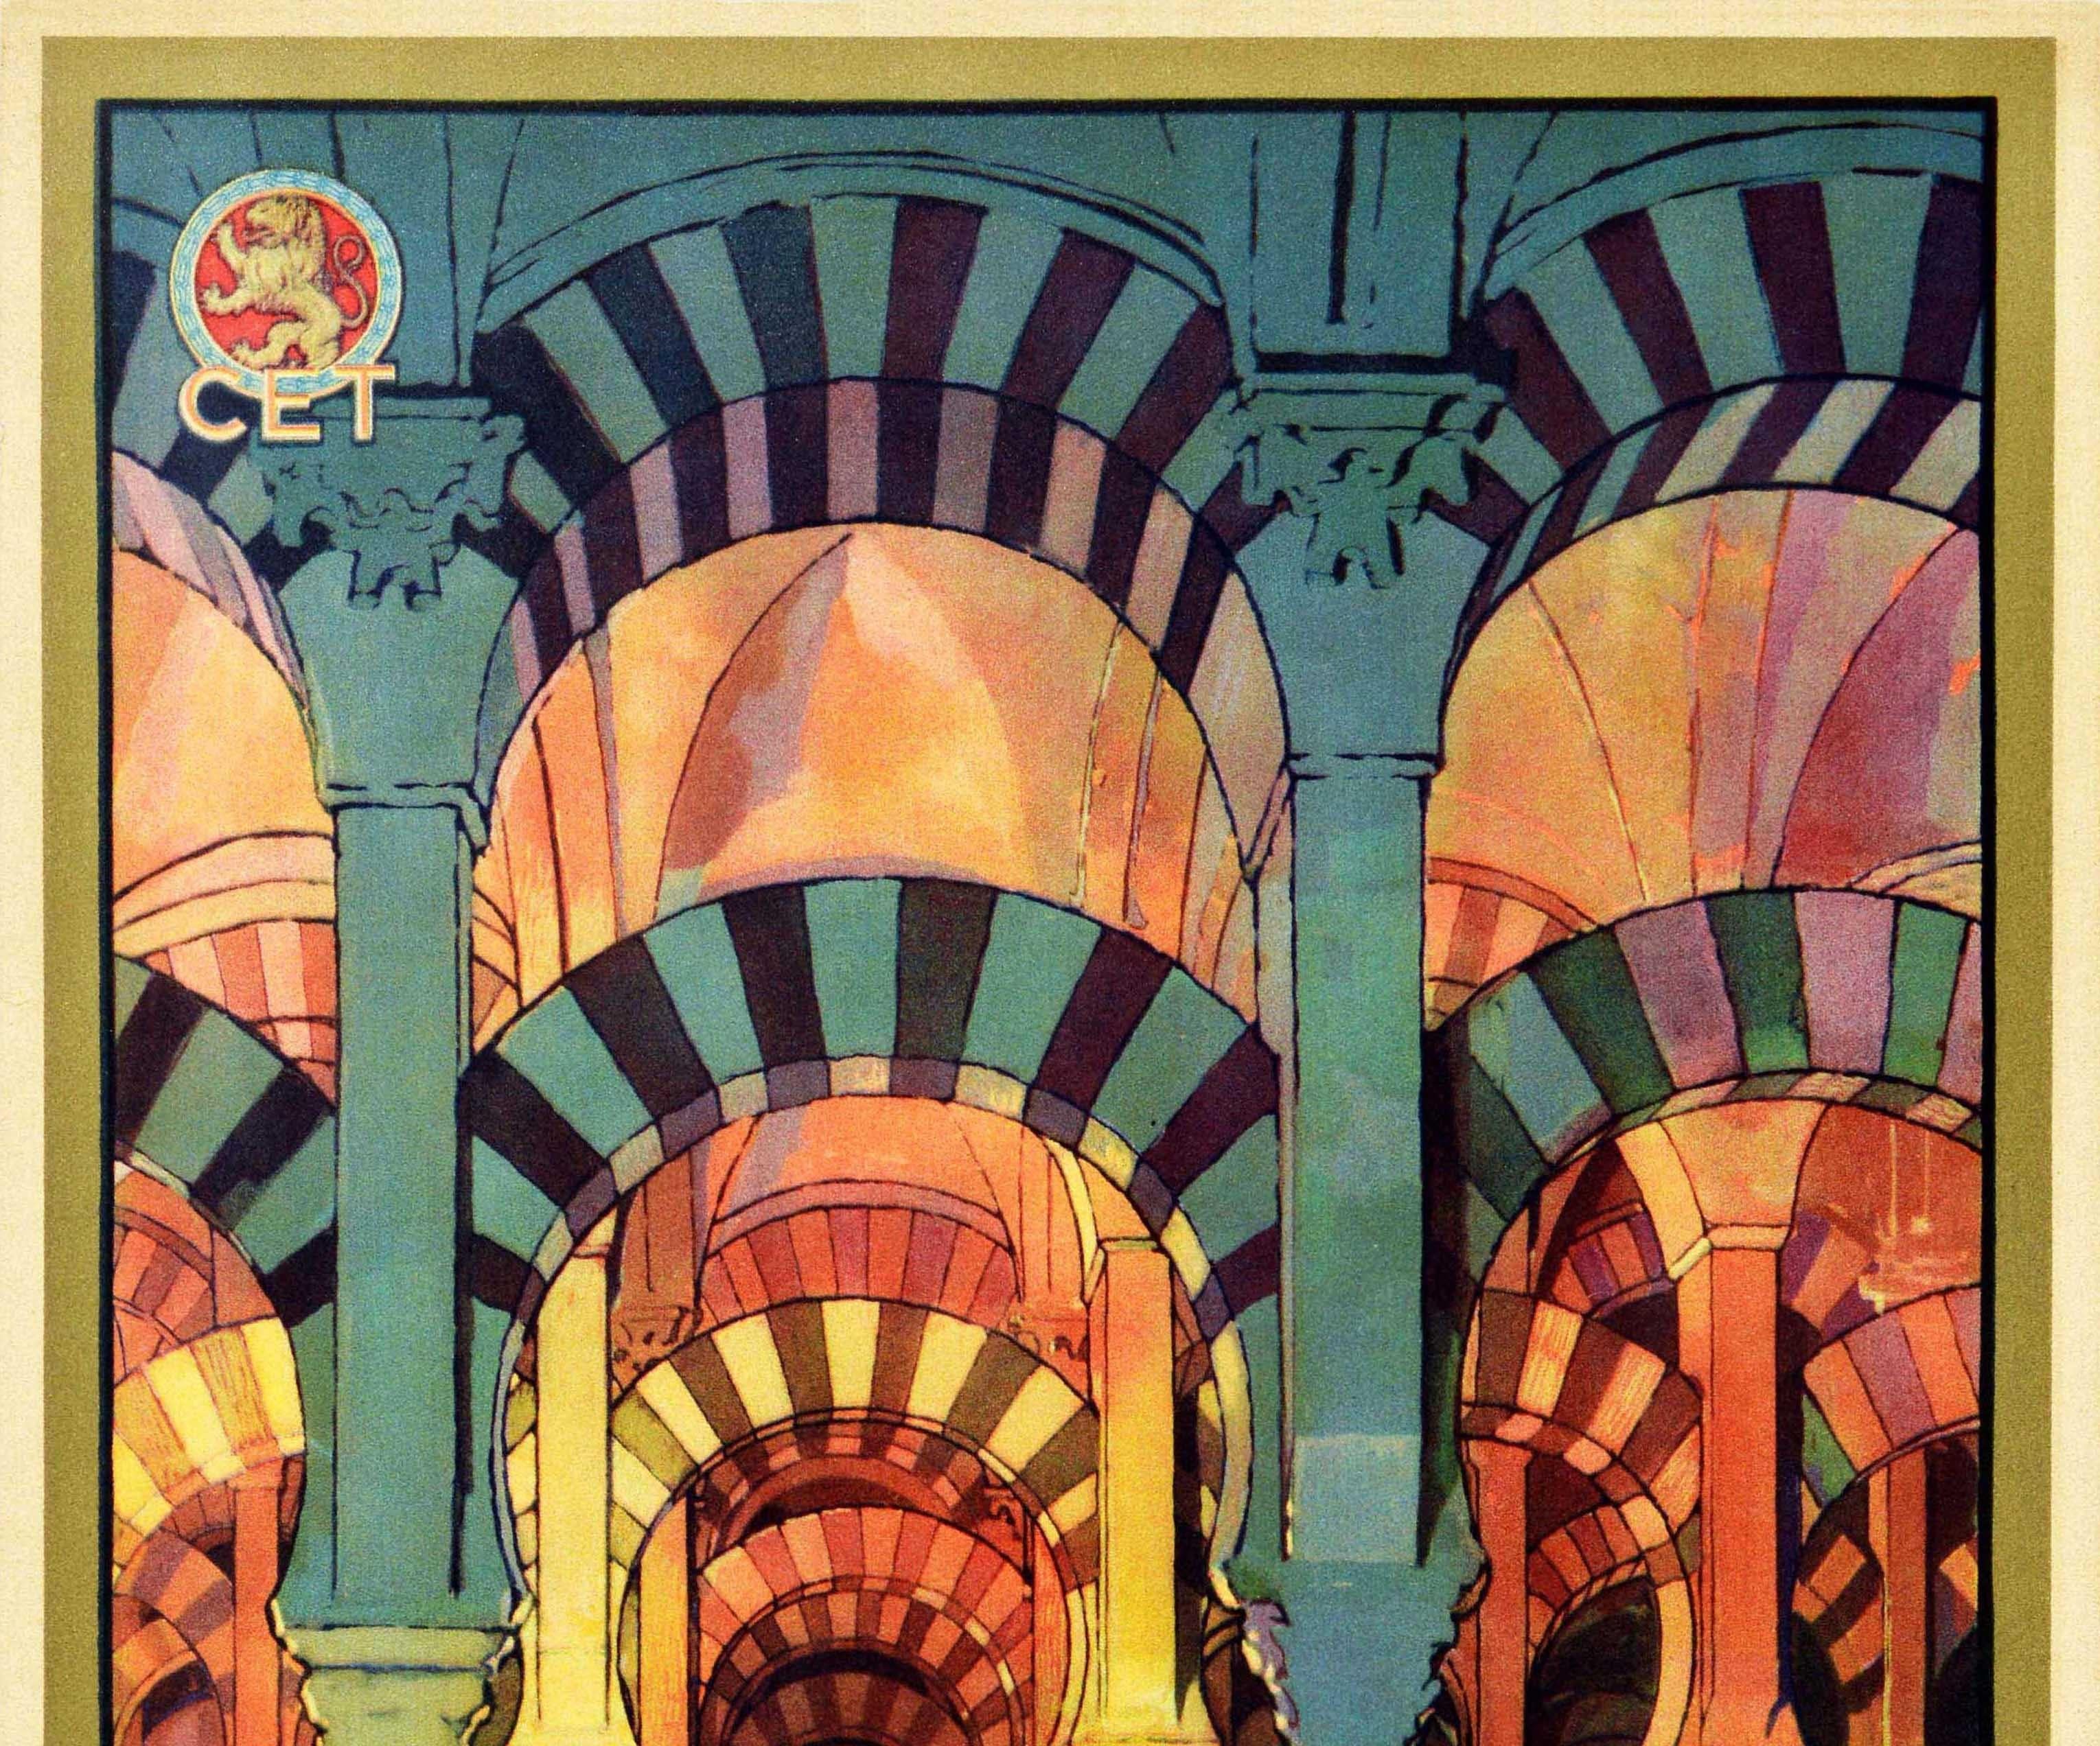 Original-Reiseplakat - Visitad Cordoba la Ciudad de los Califas / Besuchen Sie Córdoba, die Stadt der Kalifen - mit einer Ansicht, die die innovative Architektur der gestaffelten Bögen und Säulen in der historischen Mezquita / Großen